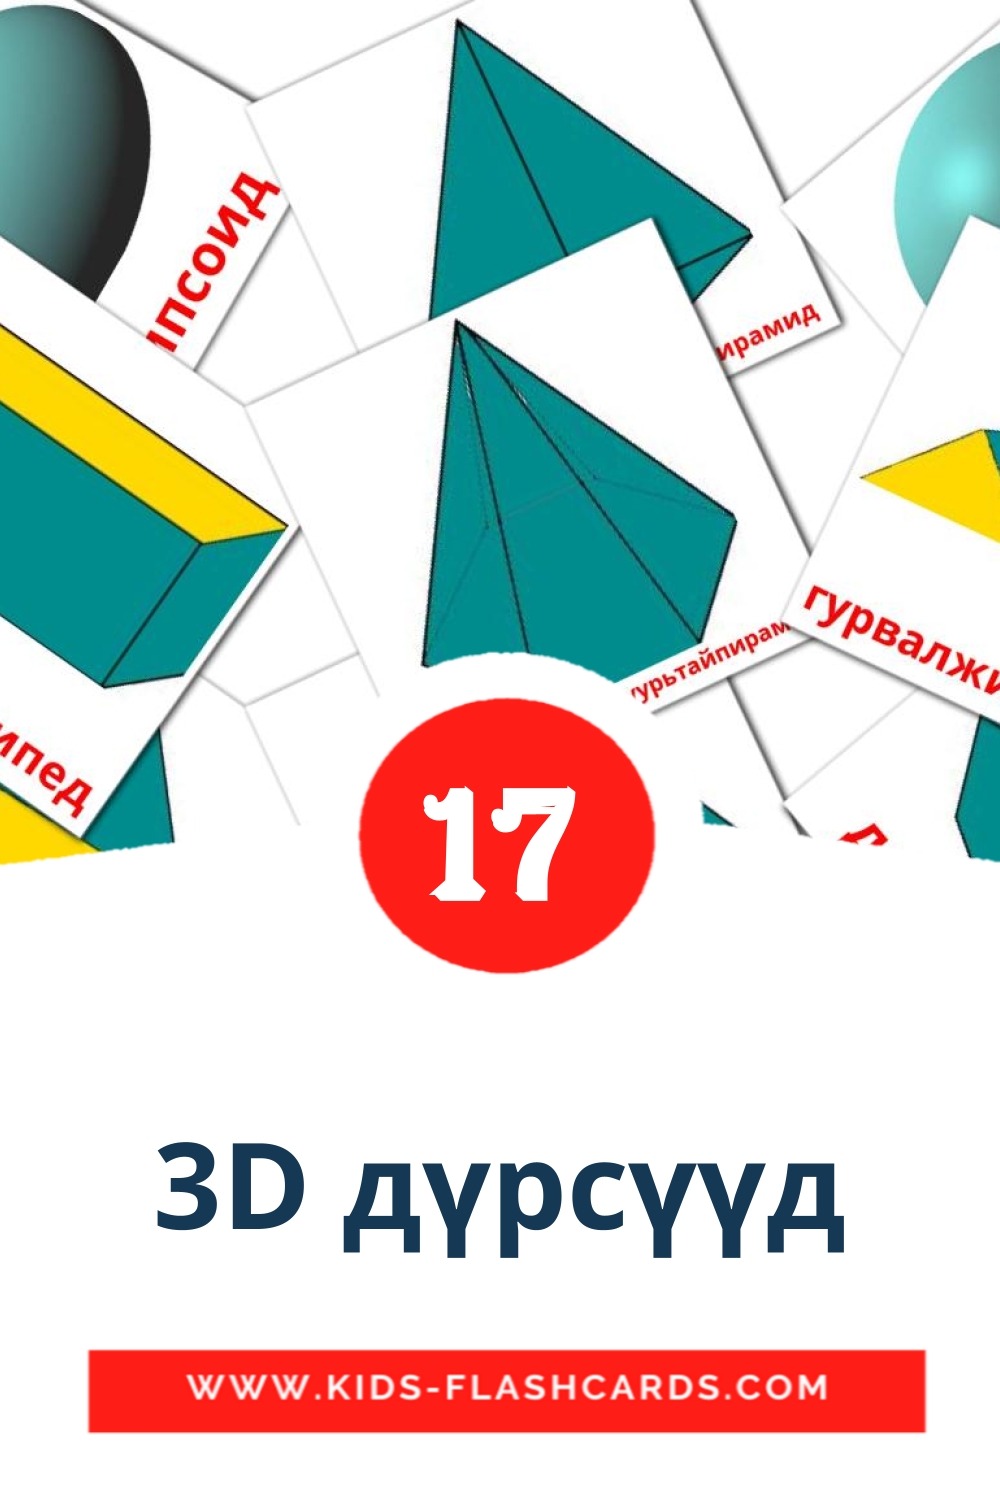 17 tarjetas didacticas de 3D дүрсүүд para el jardín de infancia en mongolisch